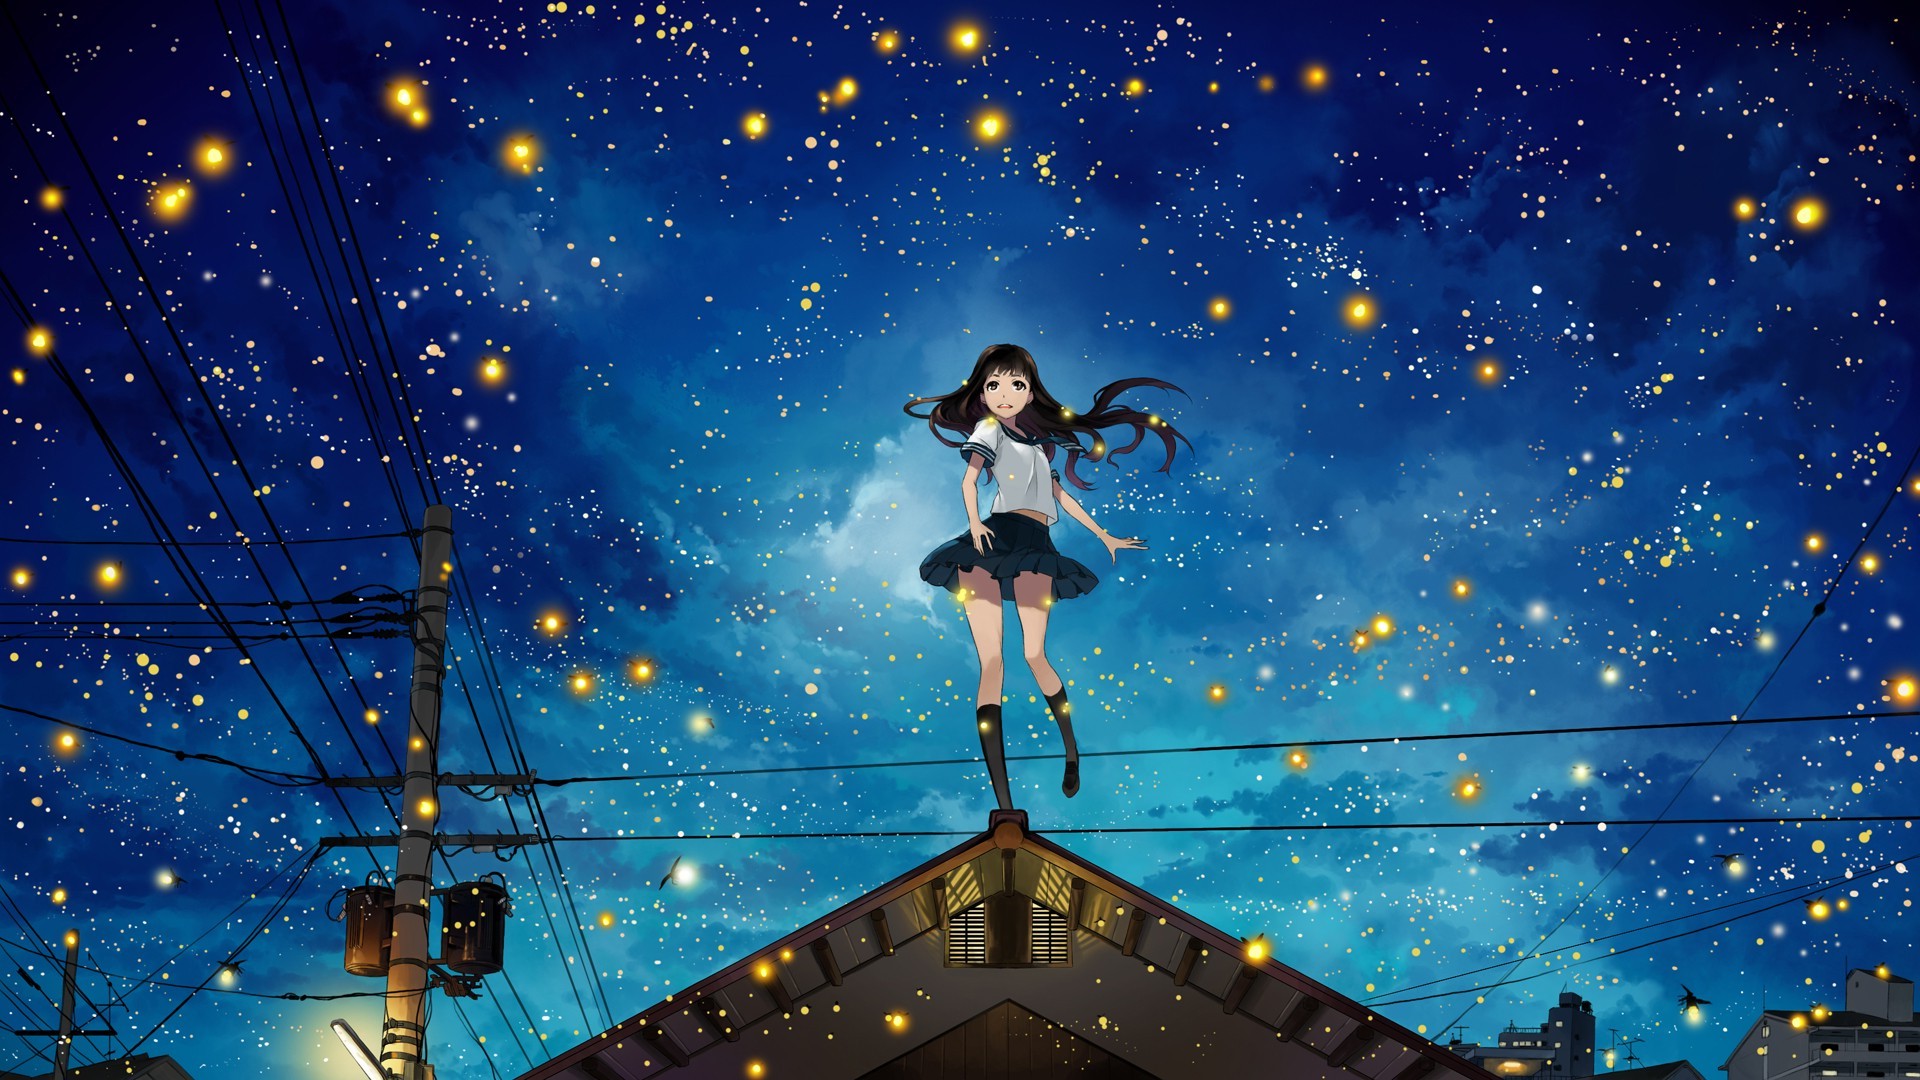 anime stars wallpaper,himmel,platz,nacht,star,universum